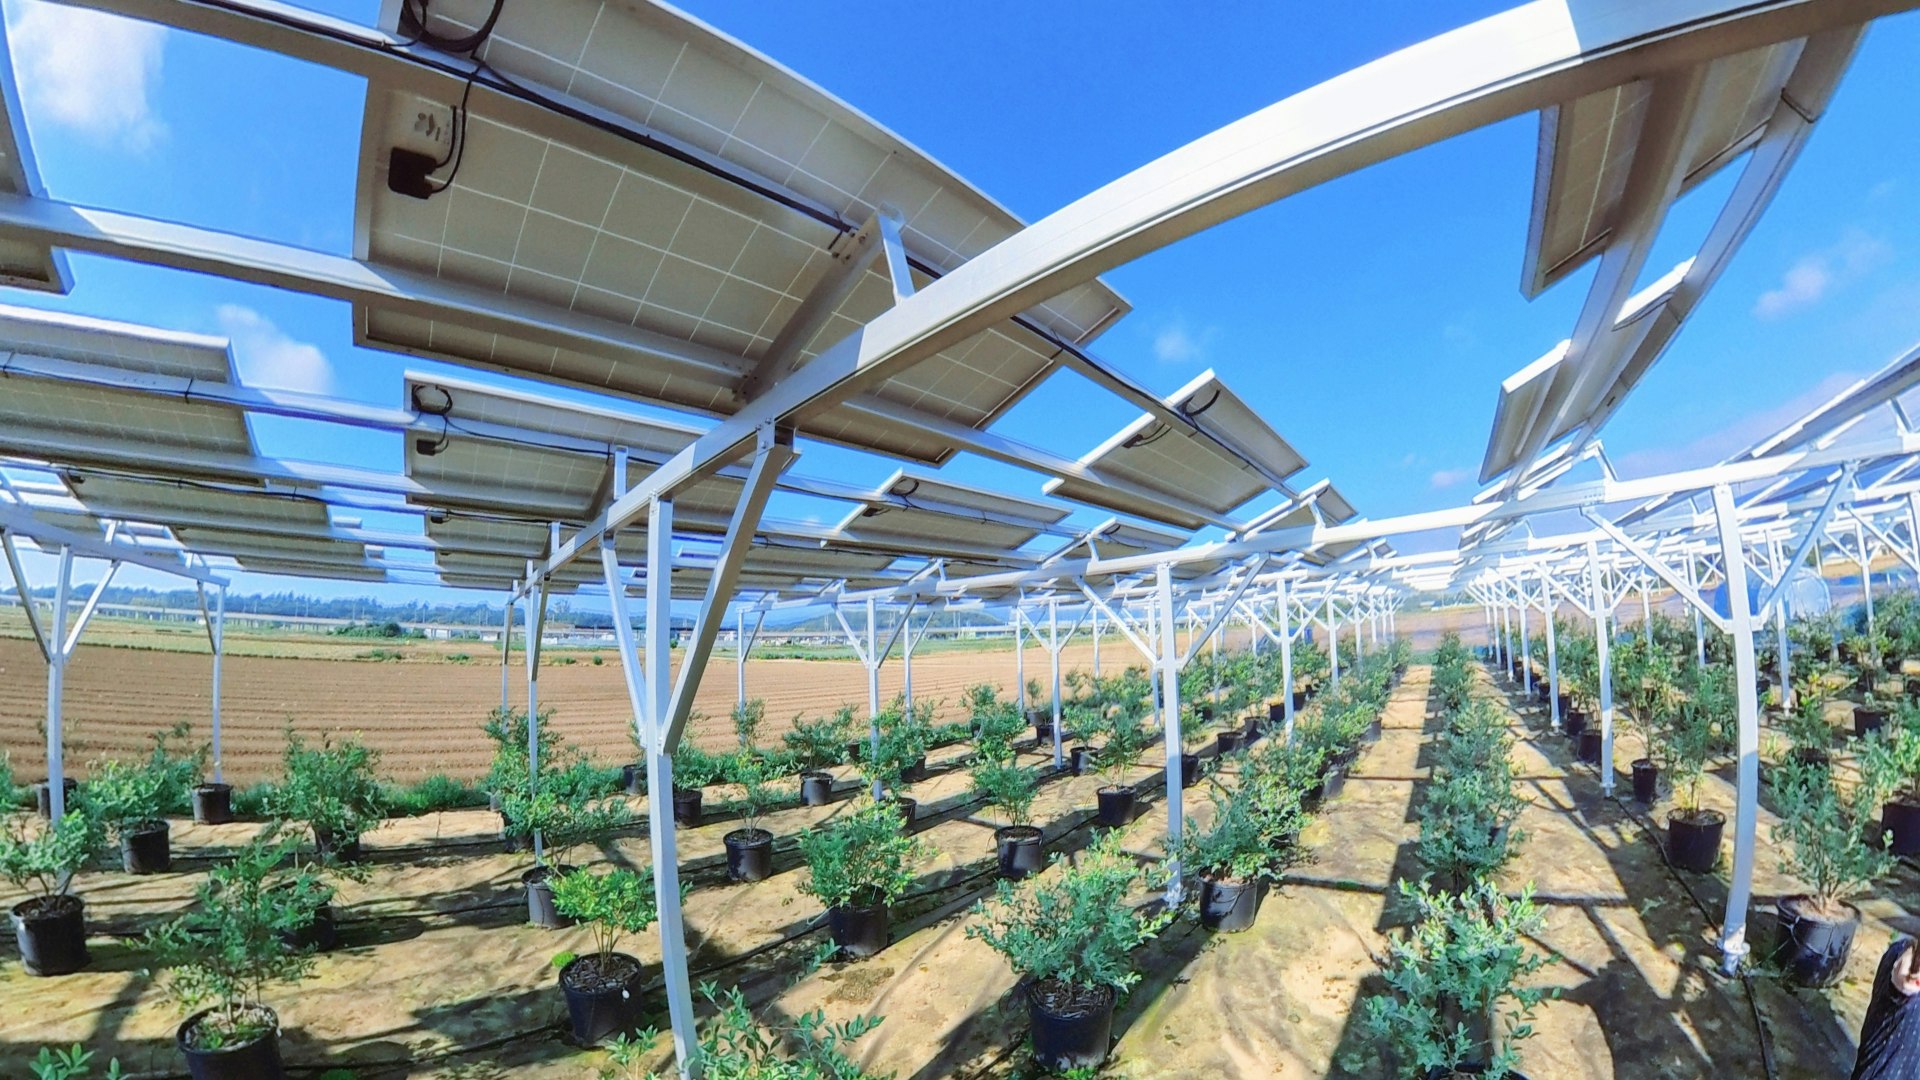 農地上部に設置された太陽光パネルで発電する「営農型太陽光発電」